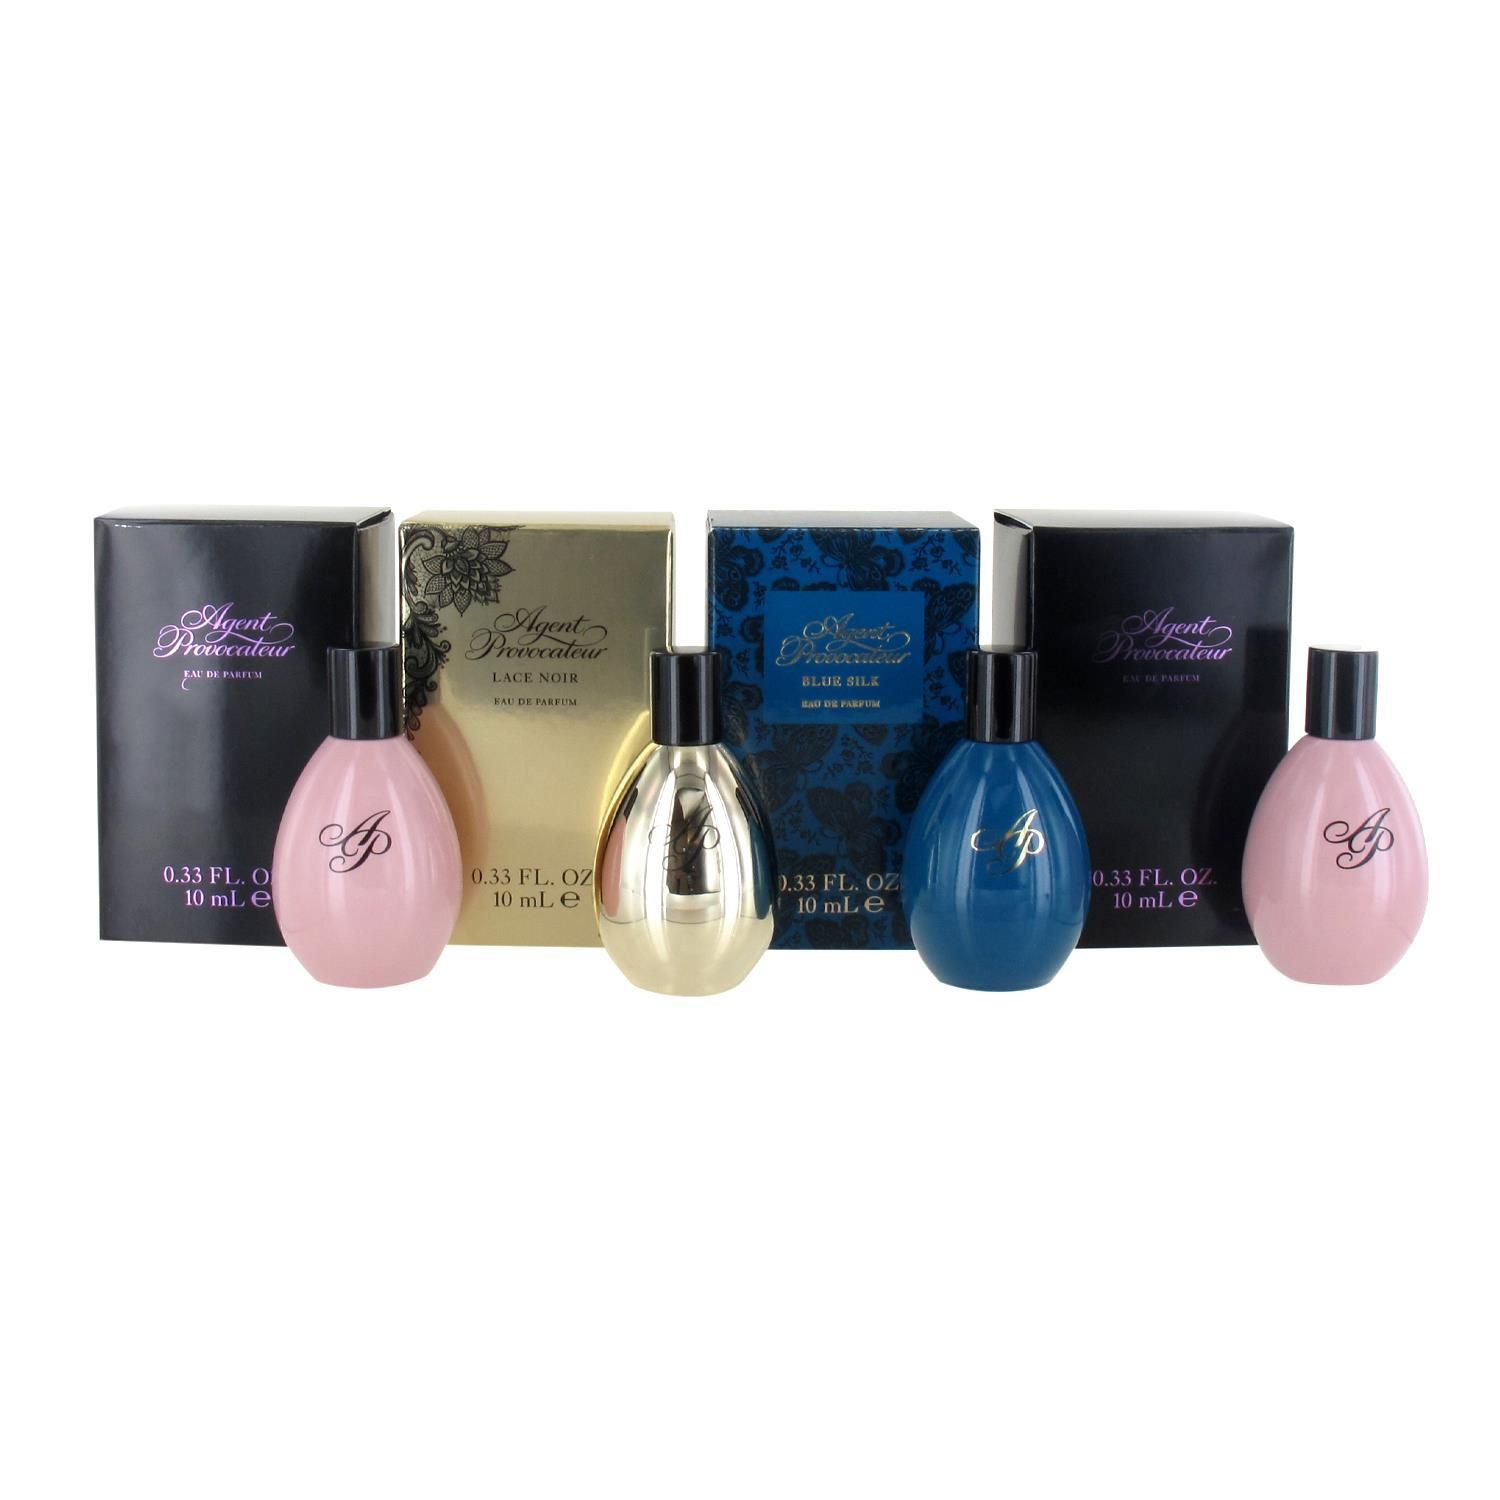 Agent Provocateur 2 x 10ml Eau de Parfum, Lace Noir 10ml Eau de and Silk 10ml Eau de Parfum Miniature Gift Set for Women